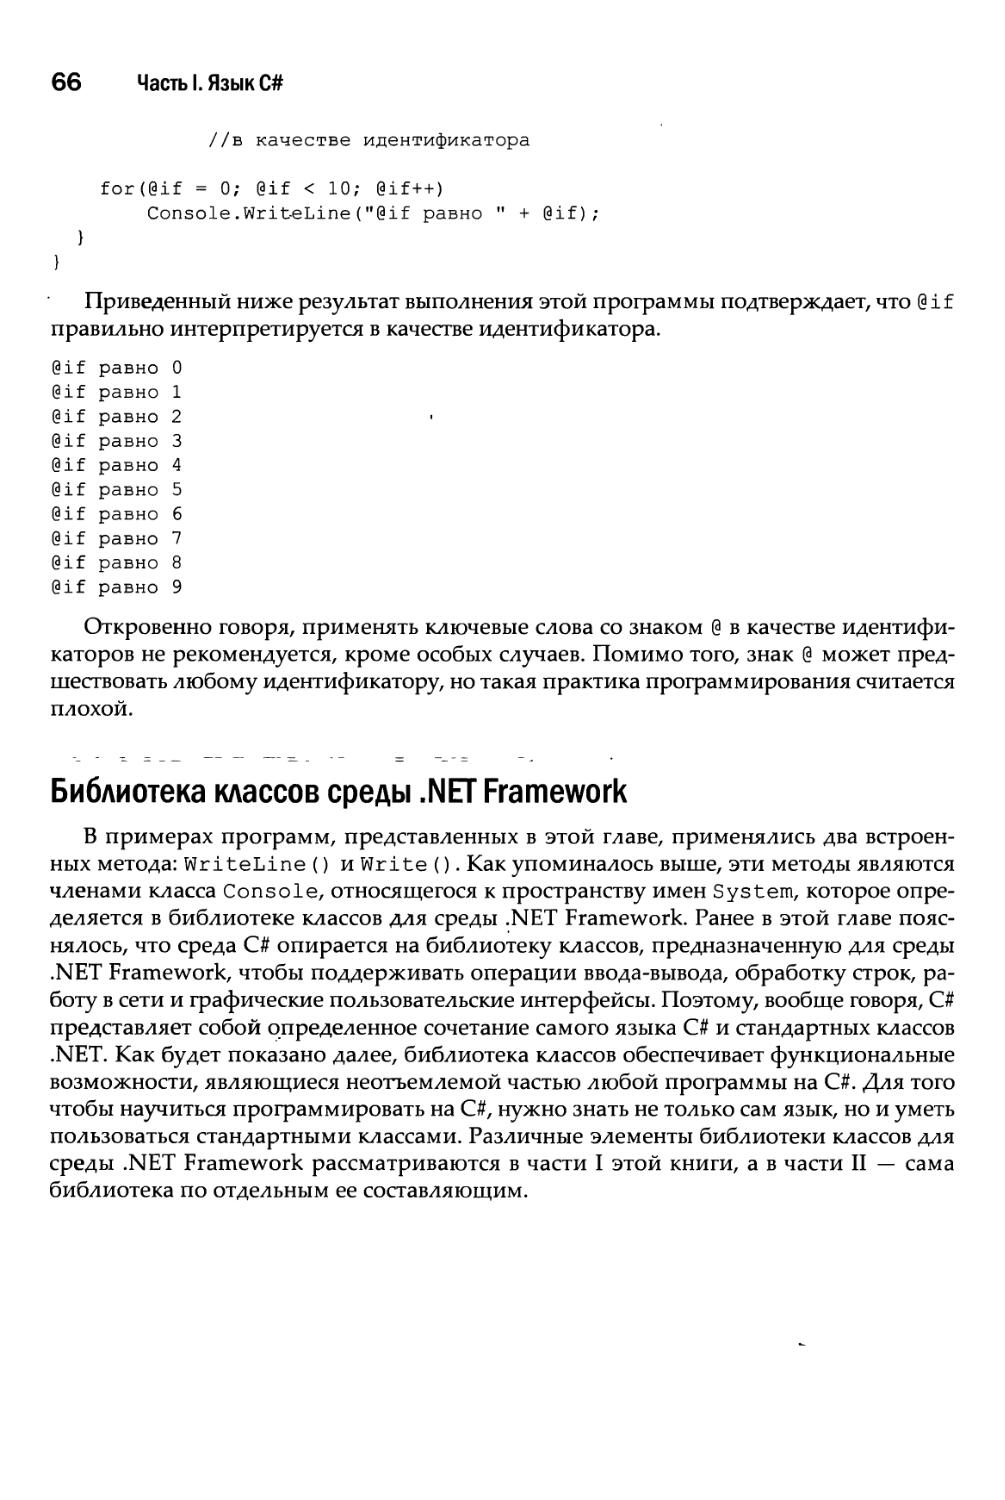 Библиотека классов среды .NET Framework